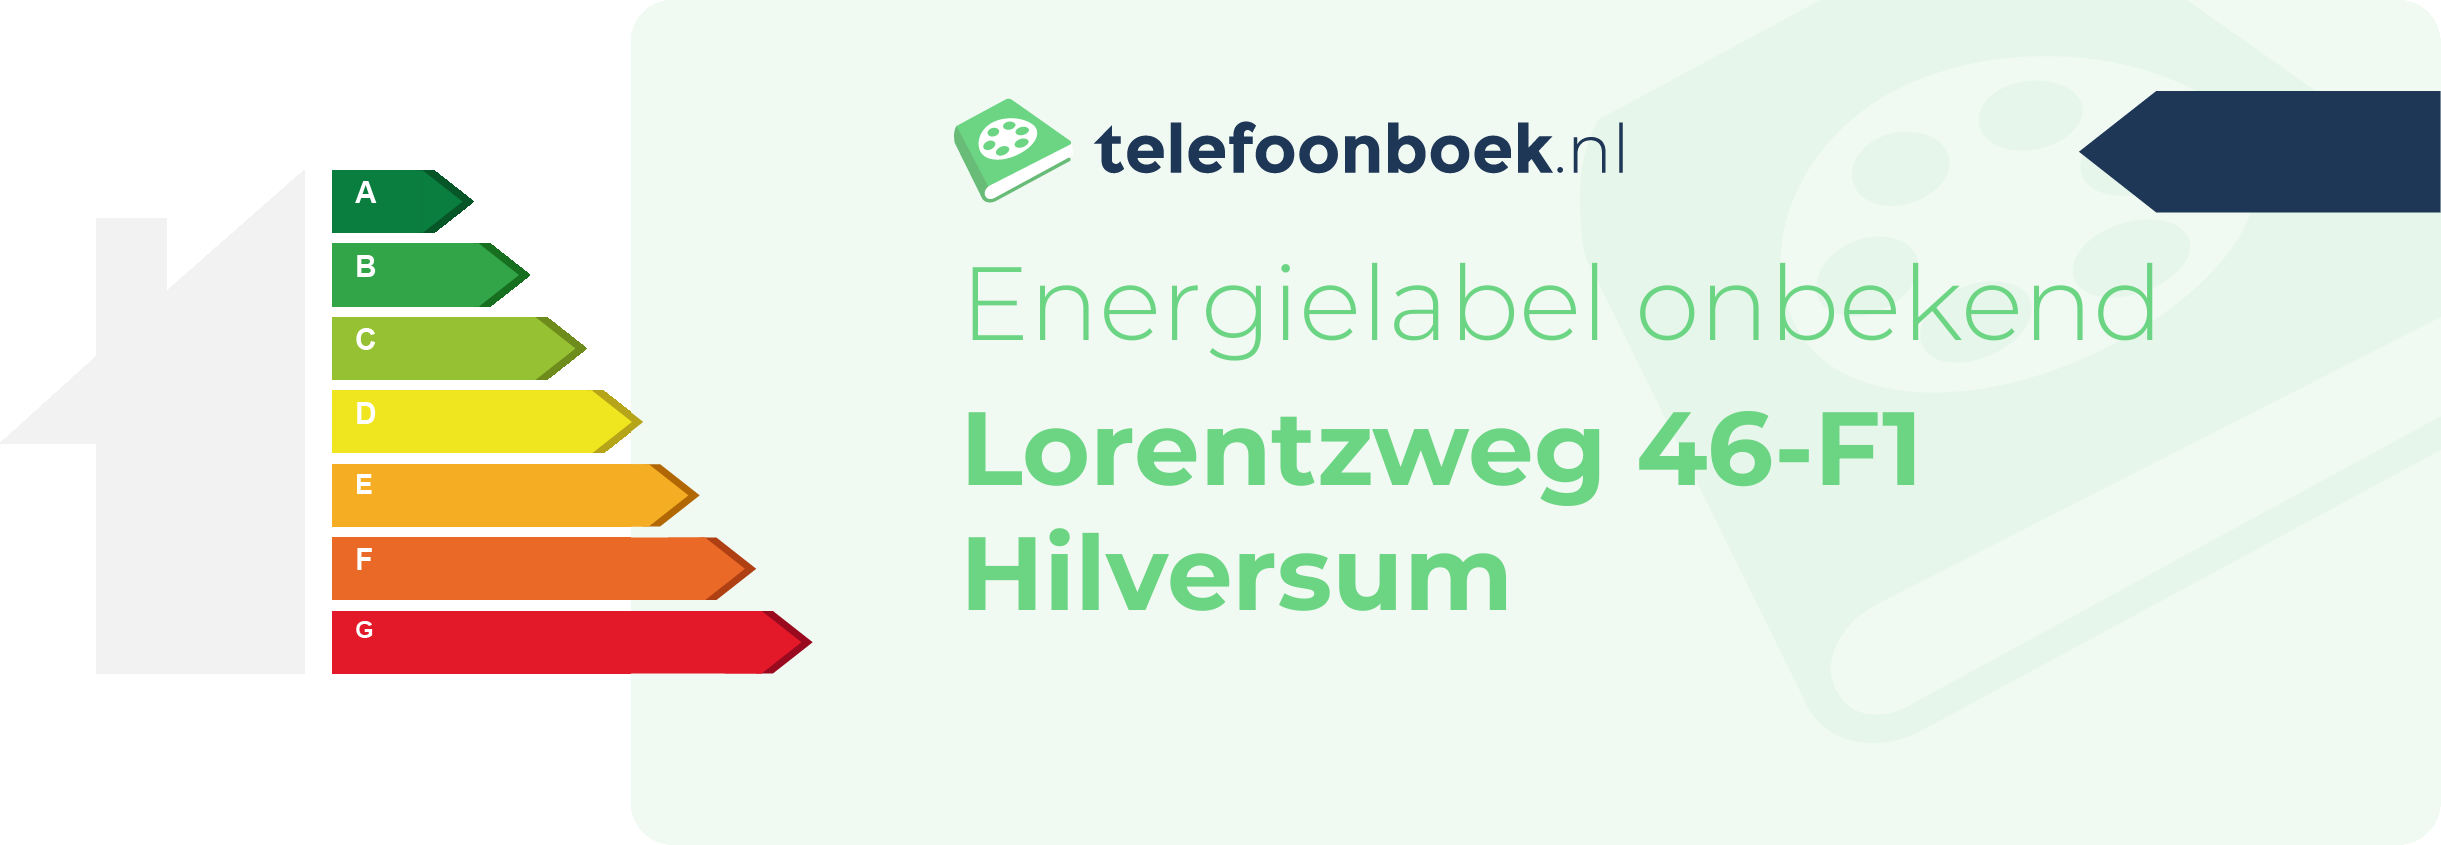 Energielabel Lorentzweg 46-F1 Hilversum